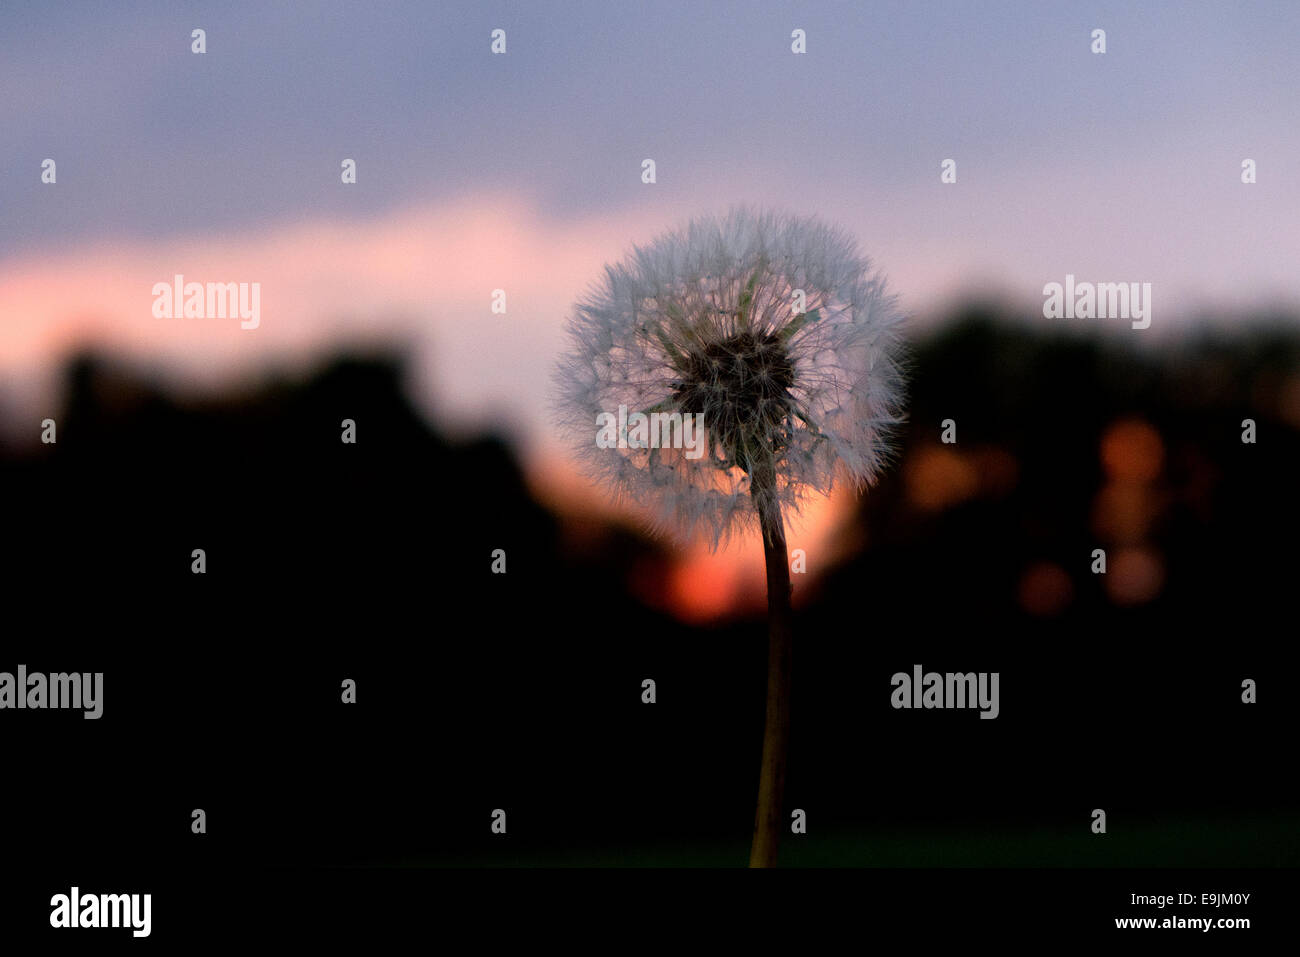 Dandelion against sunset sky. Stock Photo